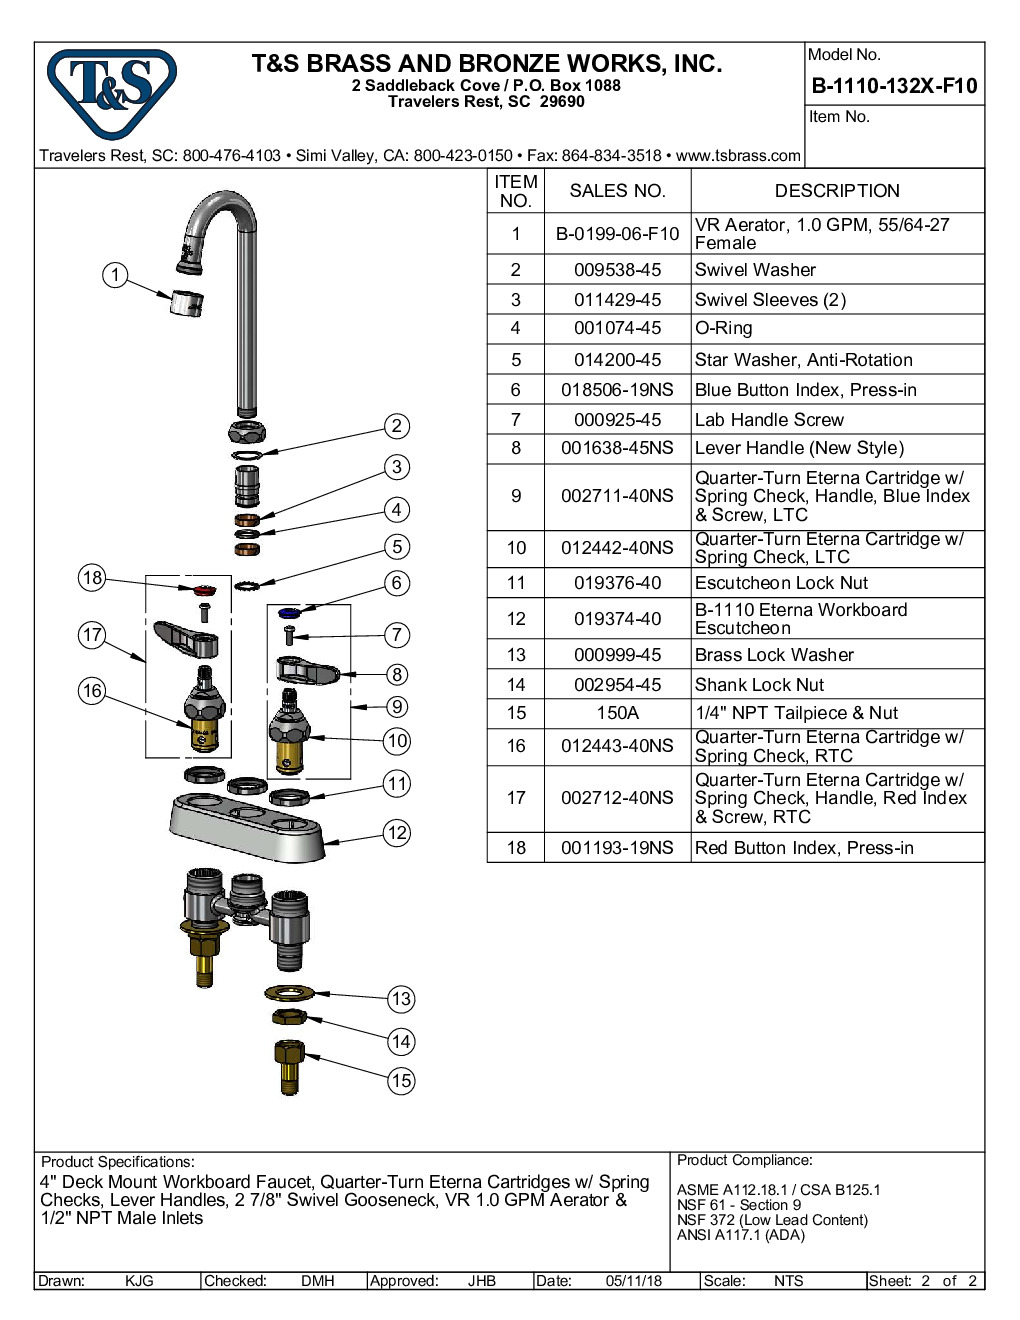 T&S Brass B-1110-132X-F10 Deck Mount Faucet